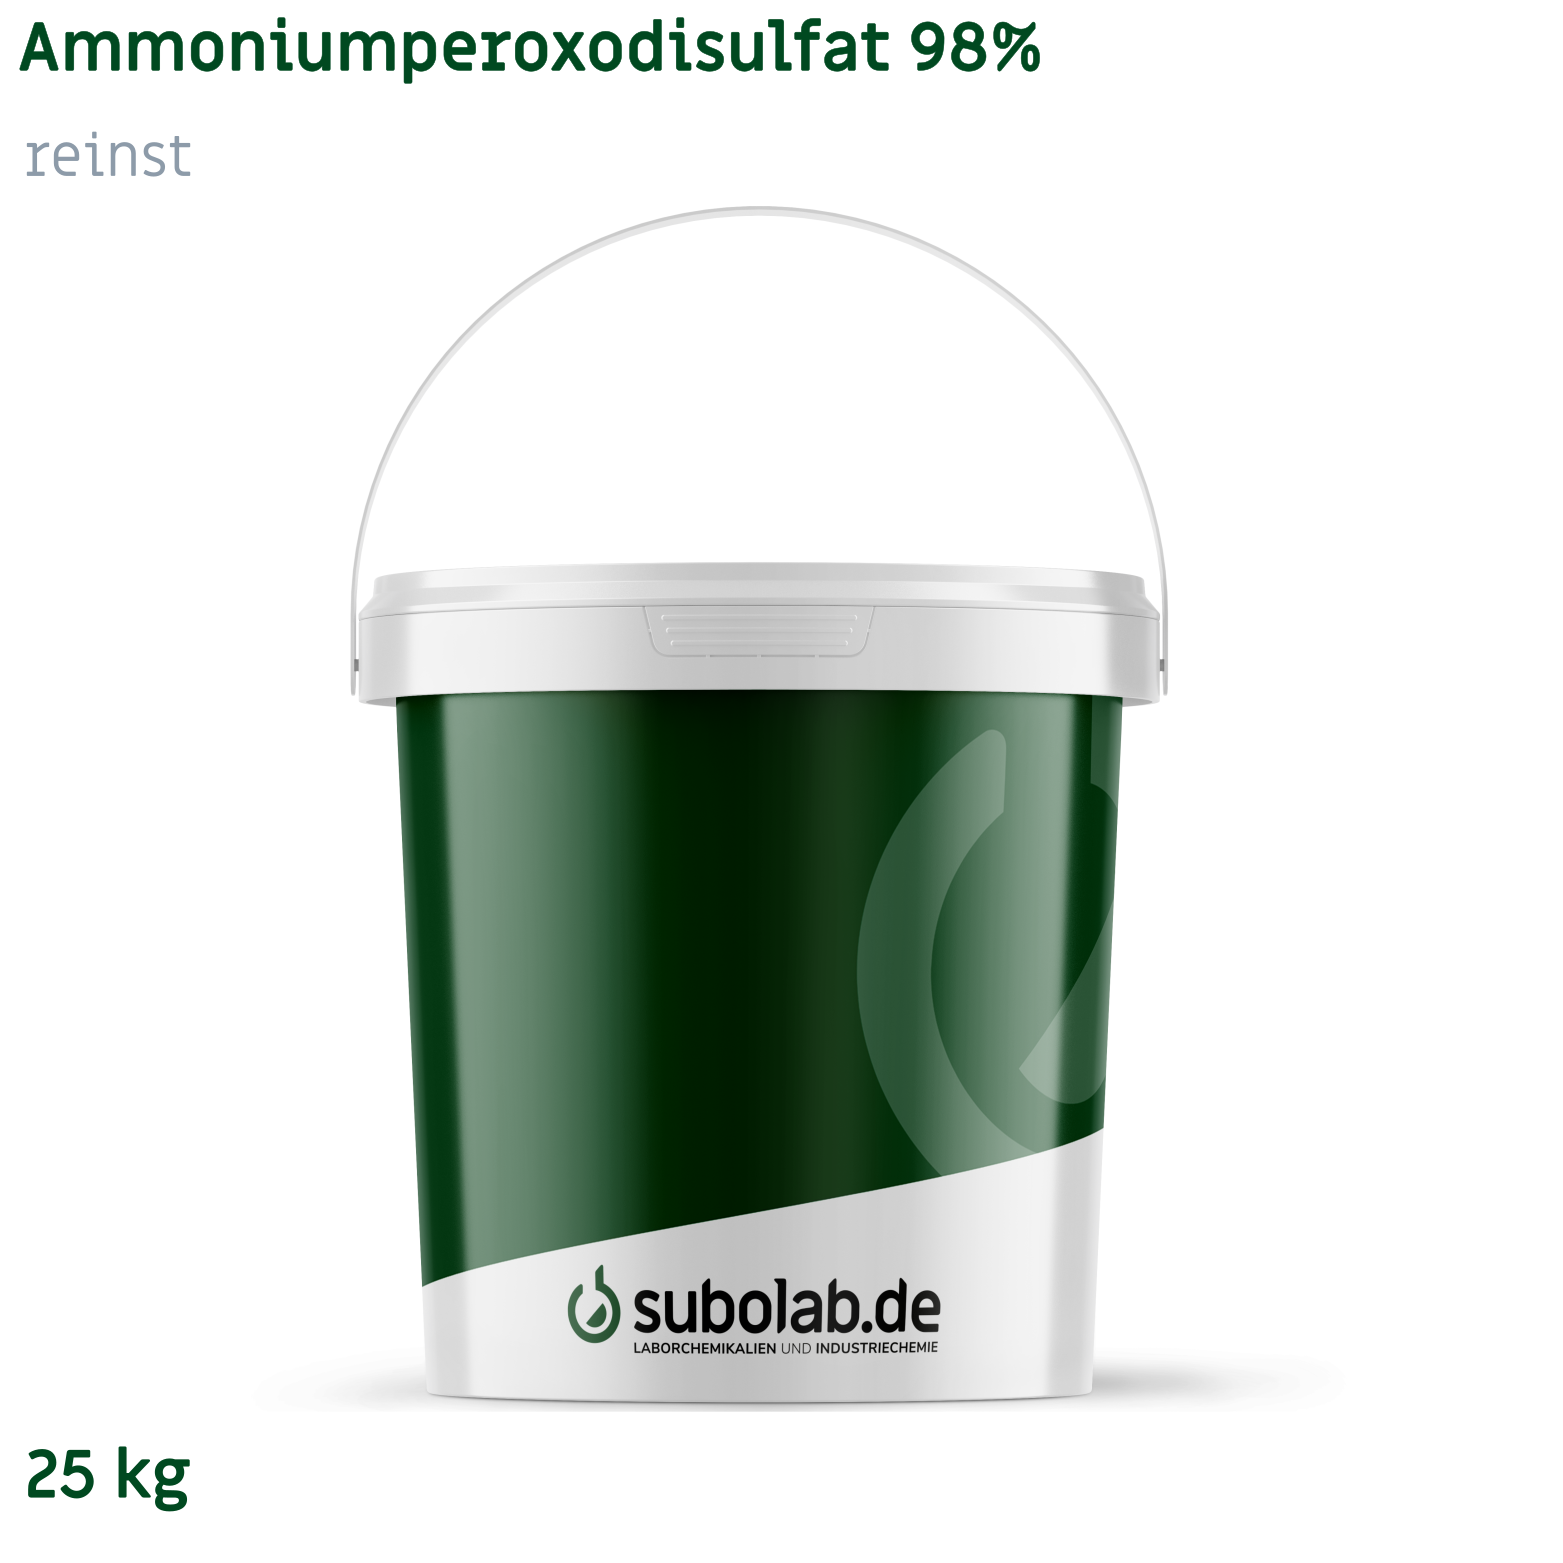 Bild von Ammoniumperoxodisulfat 98% reinst (25 kg)